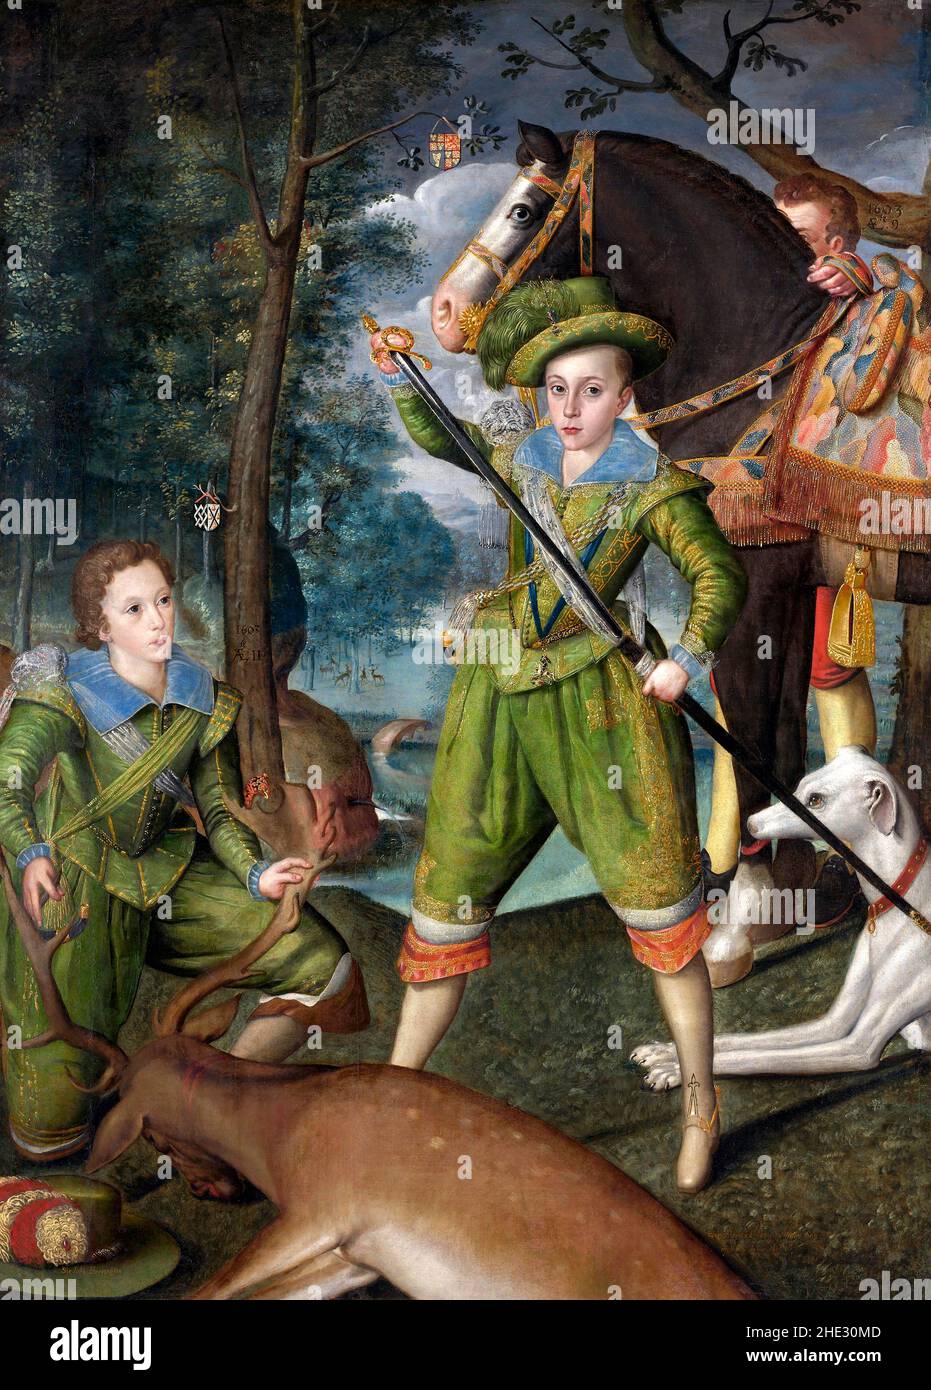 Henry Frederick (1594–1612), Prinz von Wales, mit Sir John Harington (1592–1614), in the Hunting Field von Robert Peake the Elder, Öl auf Leinwand, 1603. Henry war der älteste Sohn von König James VI. Und I von Schottland, England und Irland und war Thronfolger, aber im Alter von 18 Jahren hatte er seinen Vater im Jahr 1612 vorausgegangen. Stockfoto